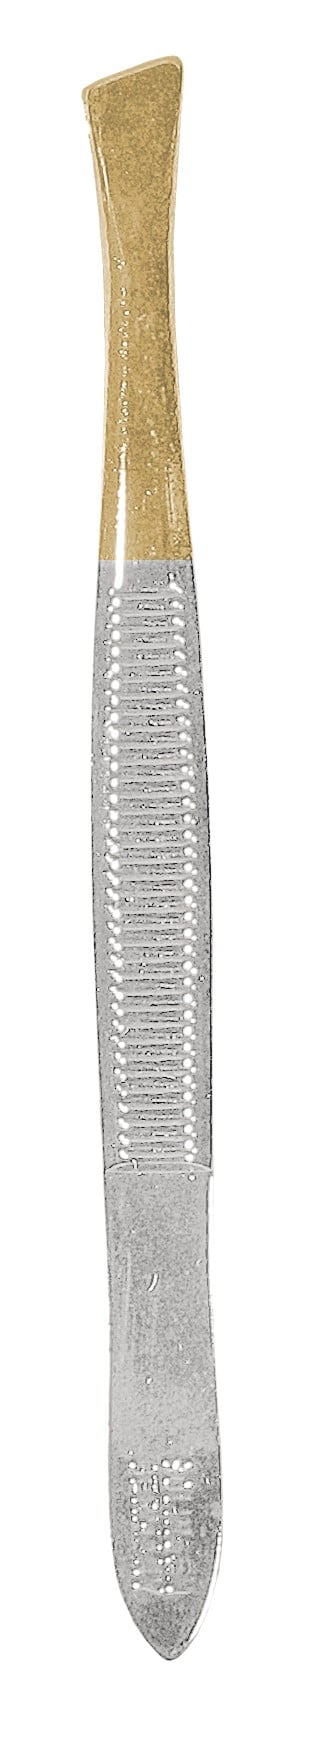 Пинцет выгнутый Titania Solingen 8 см (1070-GB) - фото 1